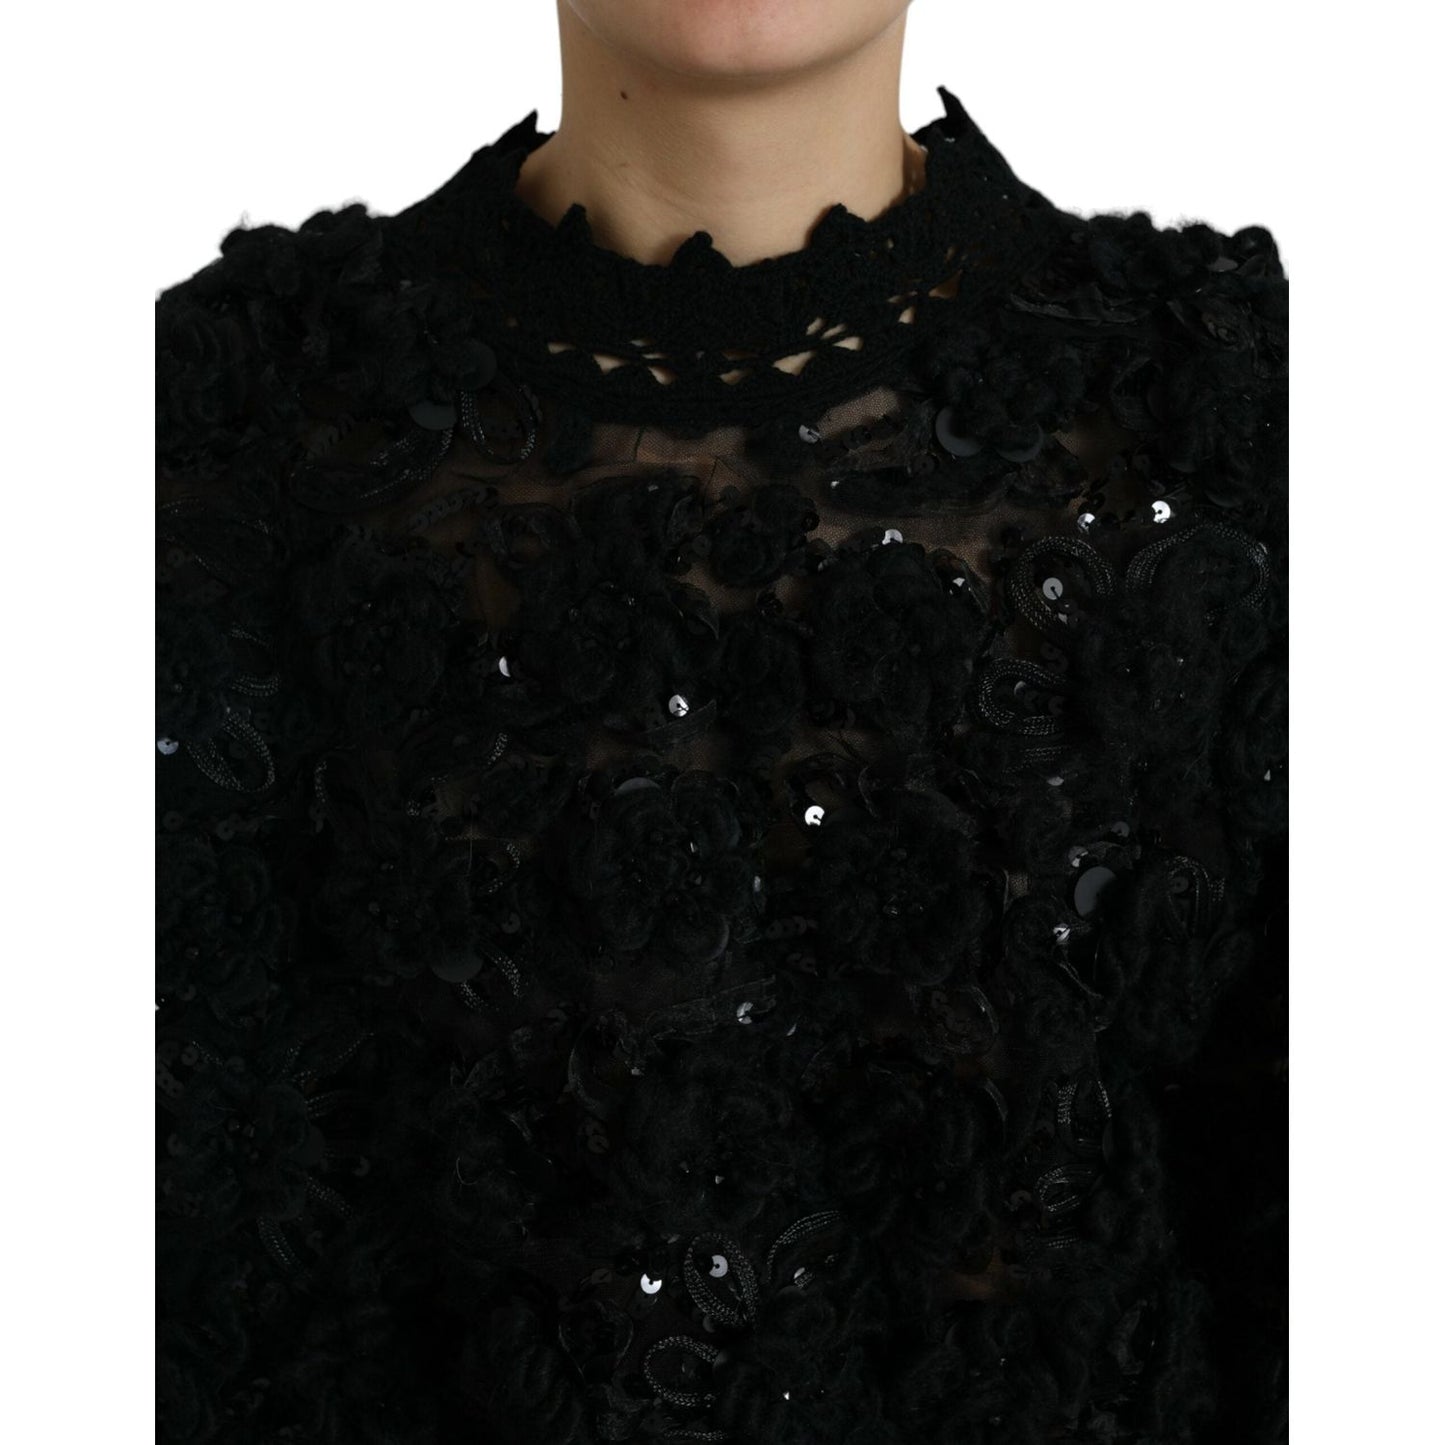 Dolce & Gabbana Sequin Embellished Black Pullover black-sequined-embellished-pullover-sweater